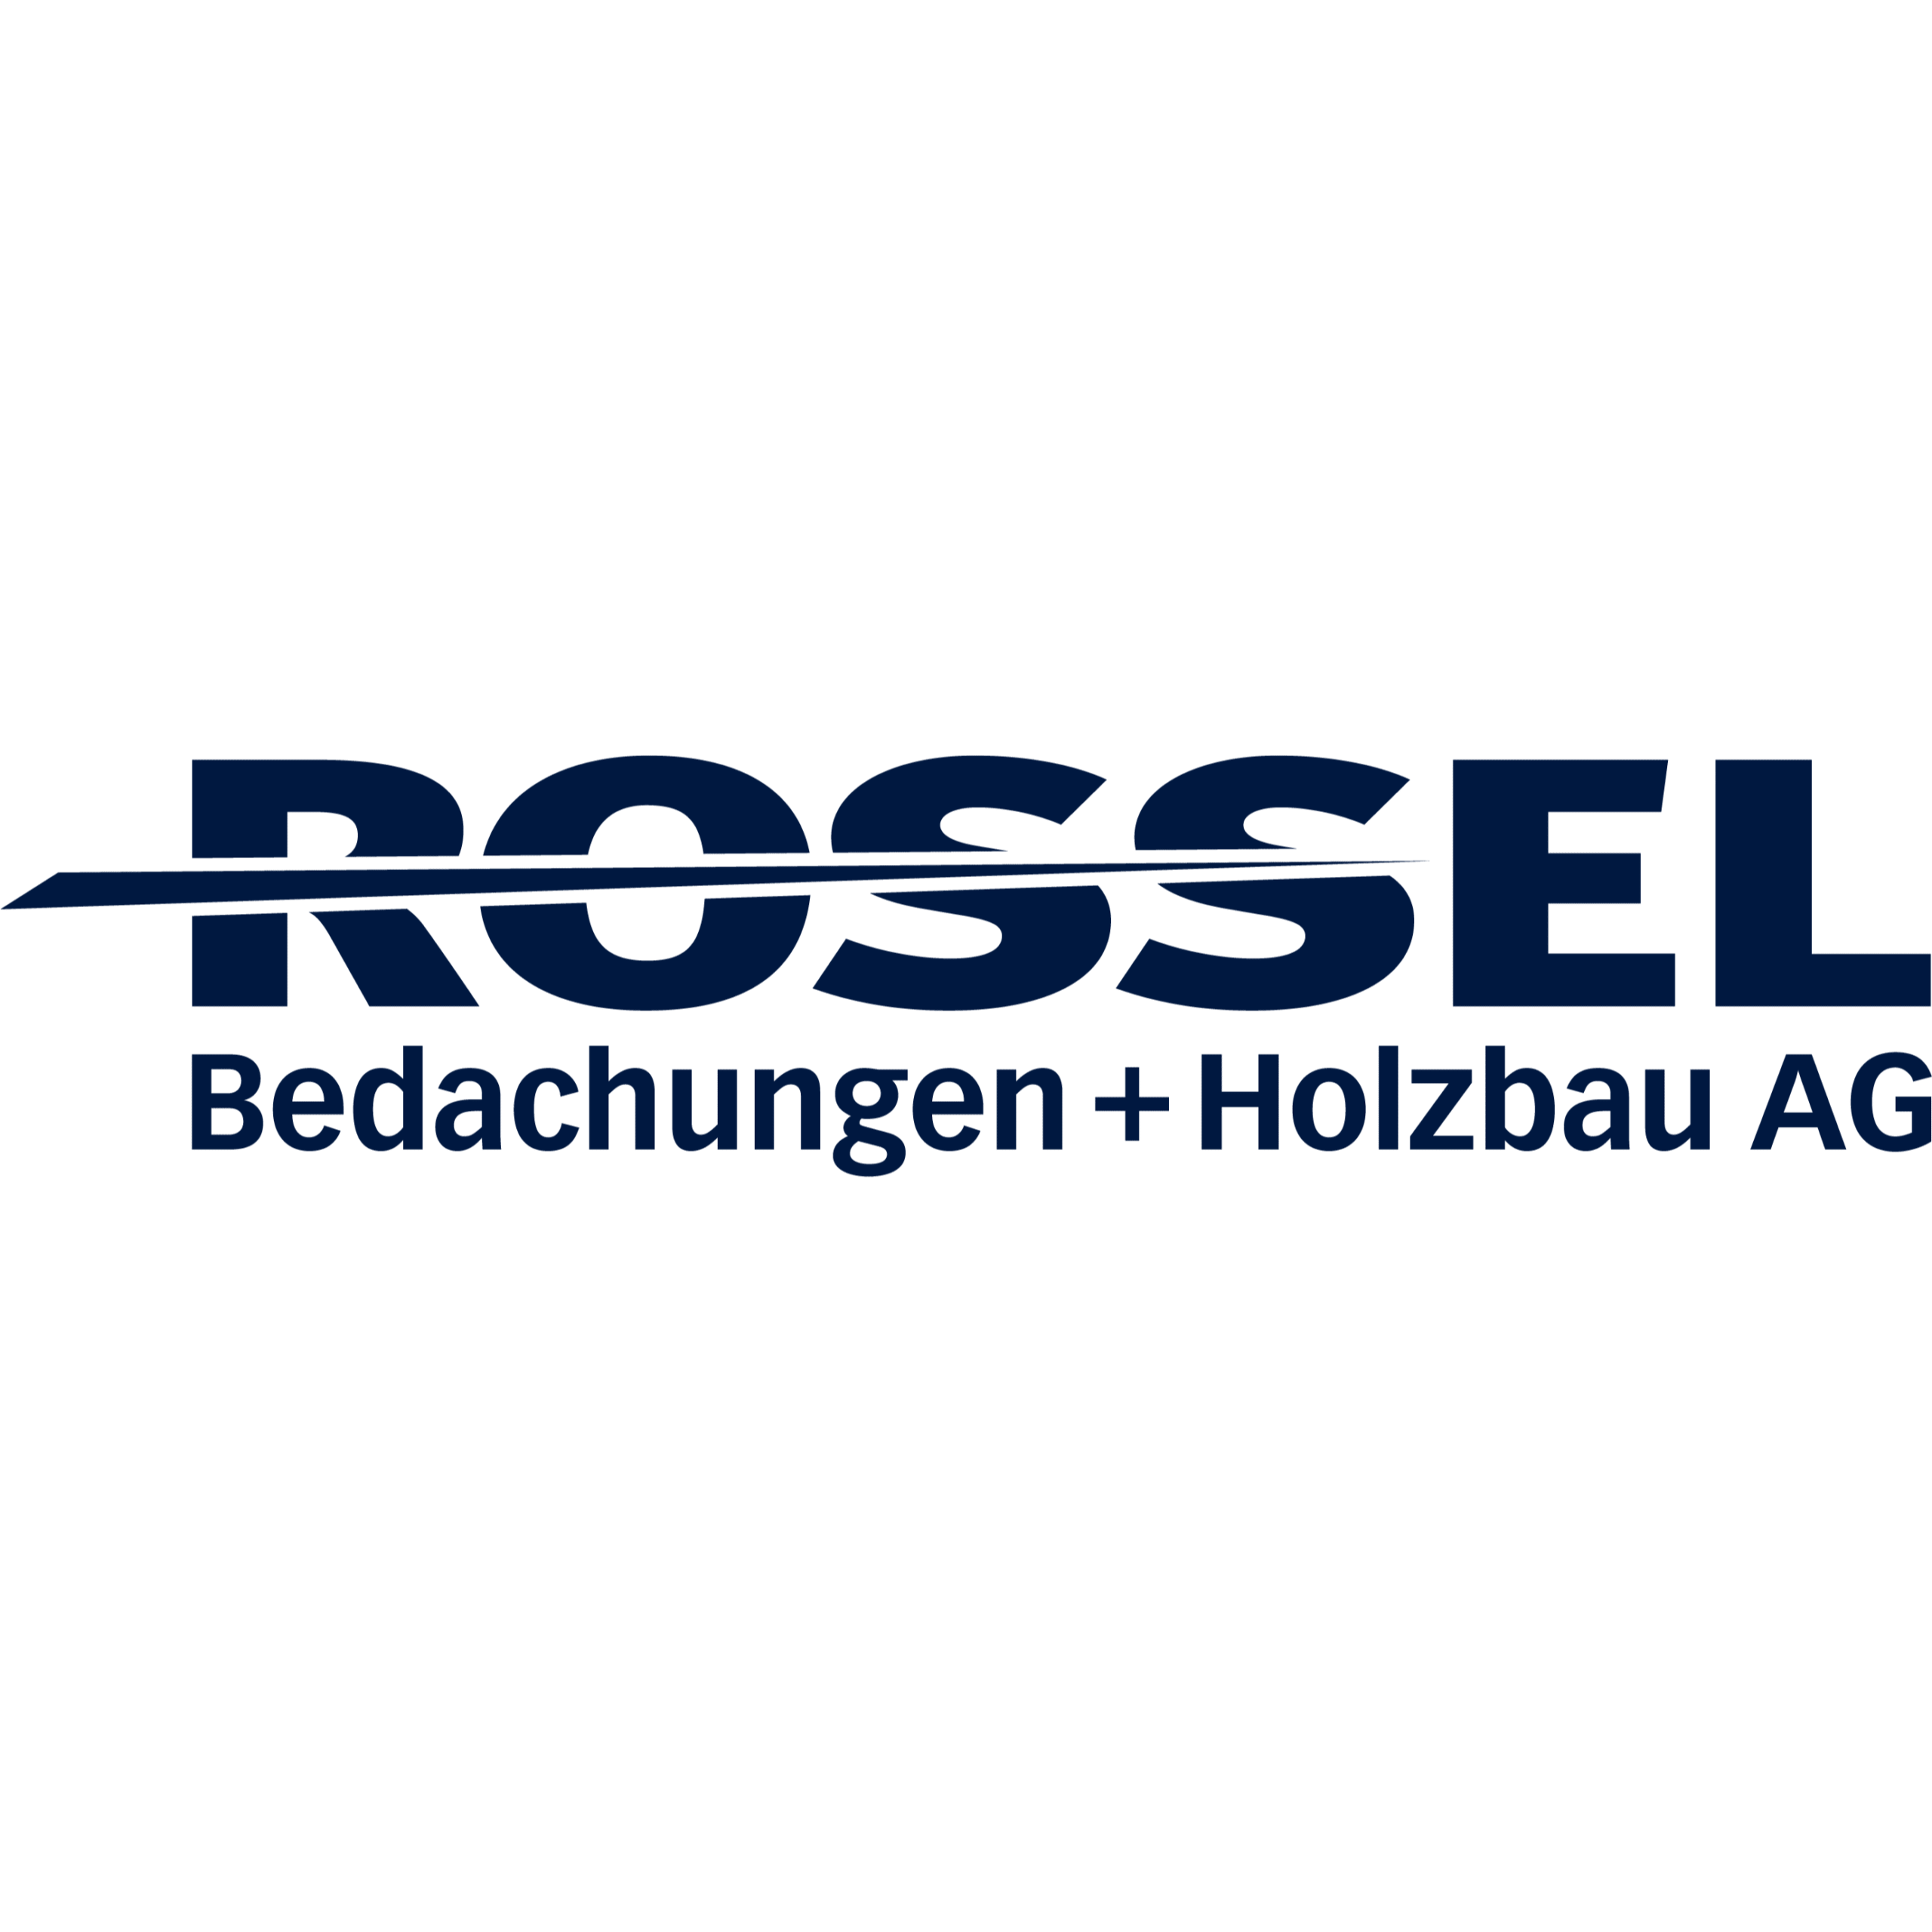 Rossel Bedachungen + Holzbau AG Logo